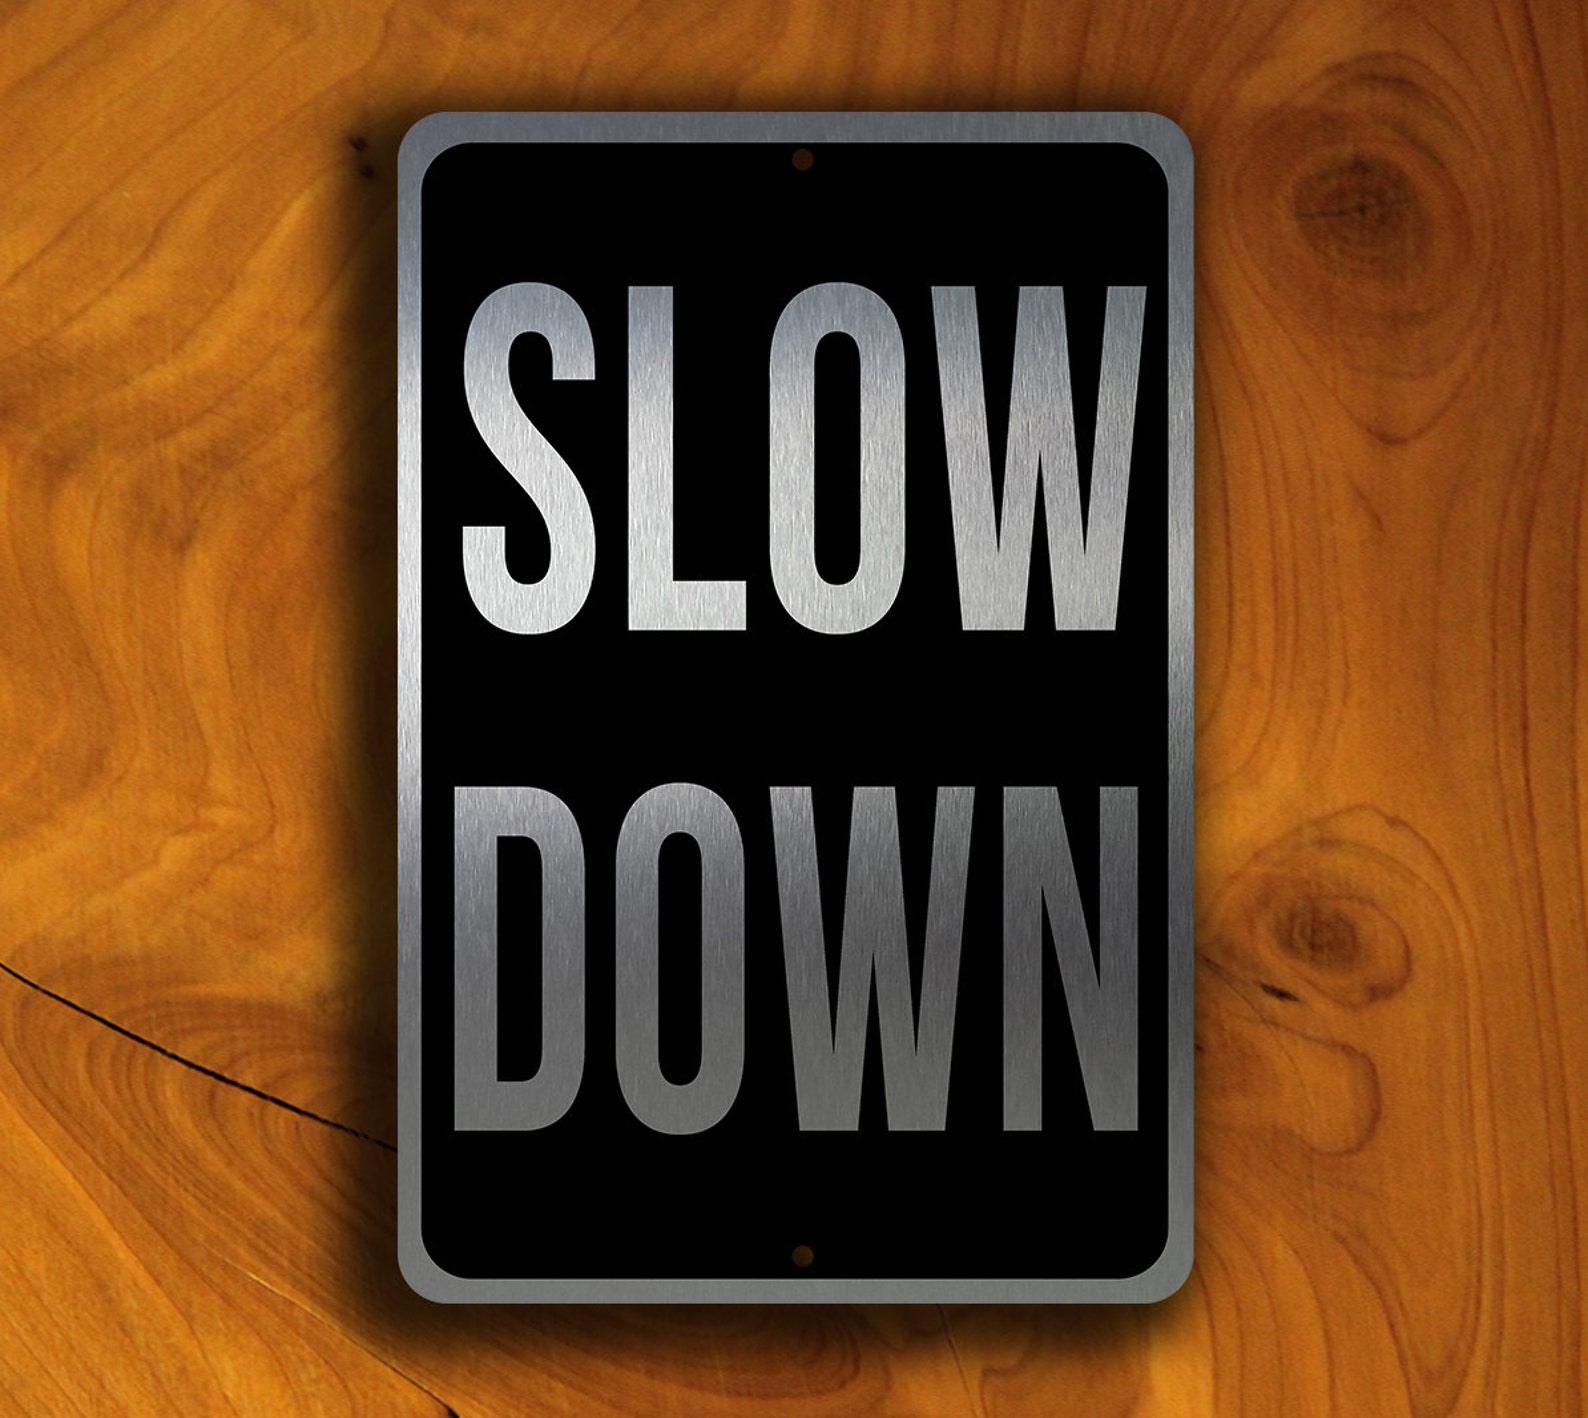 Sign down. Slow down. Slow down 5. Down sign. Slow.